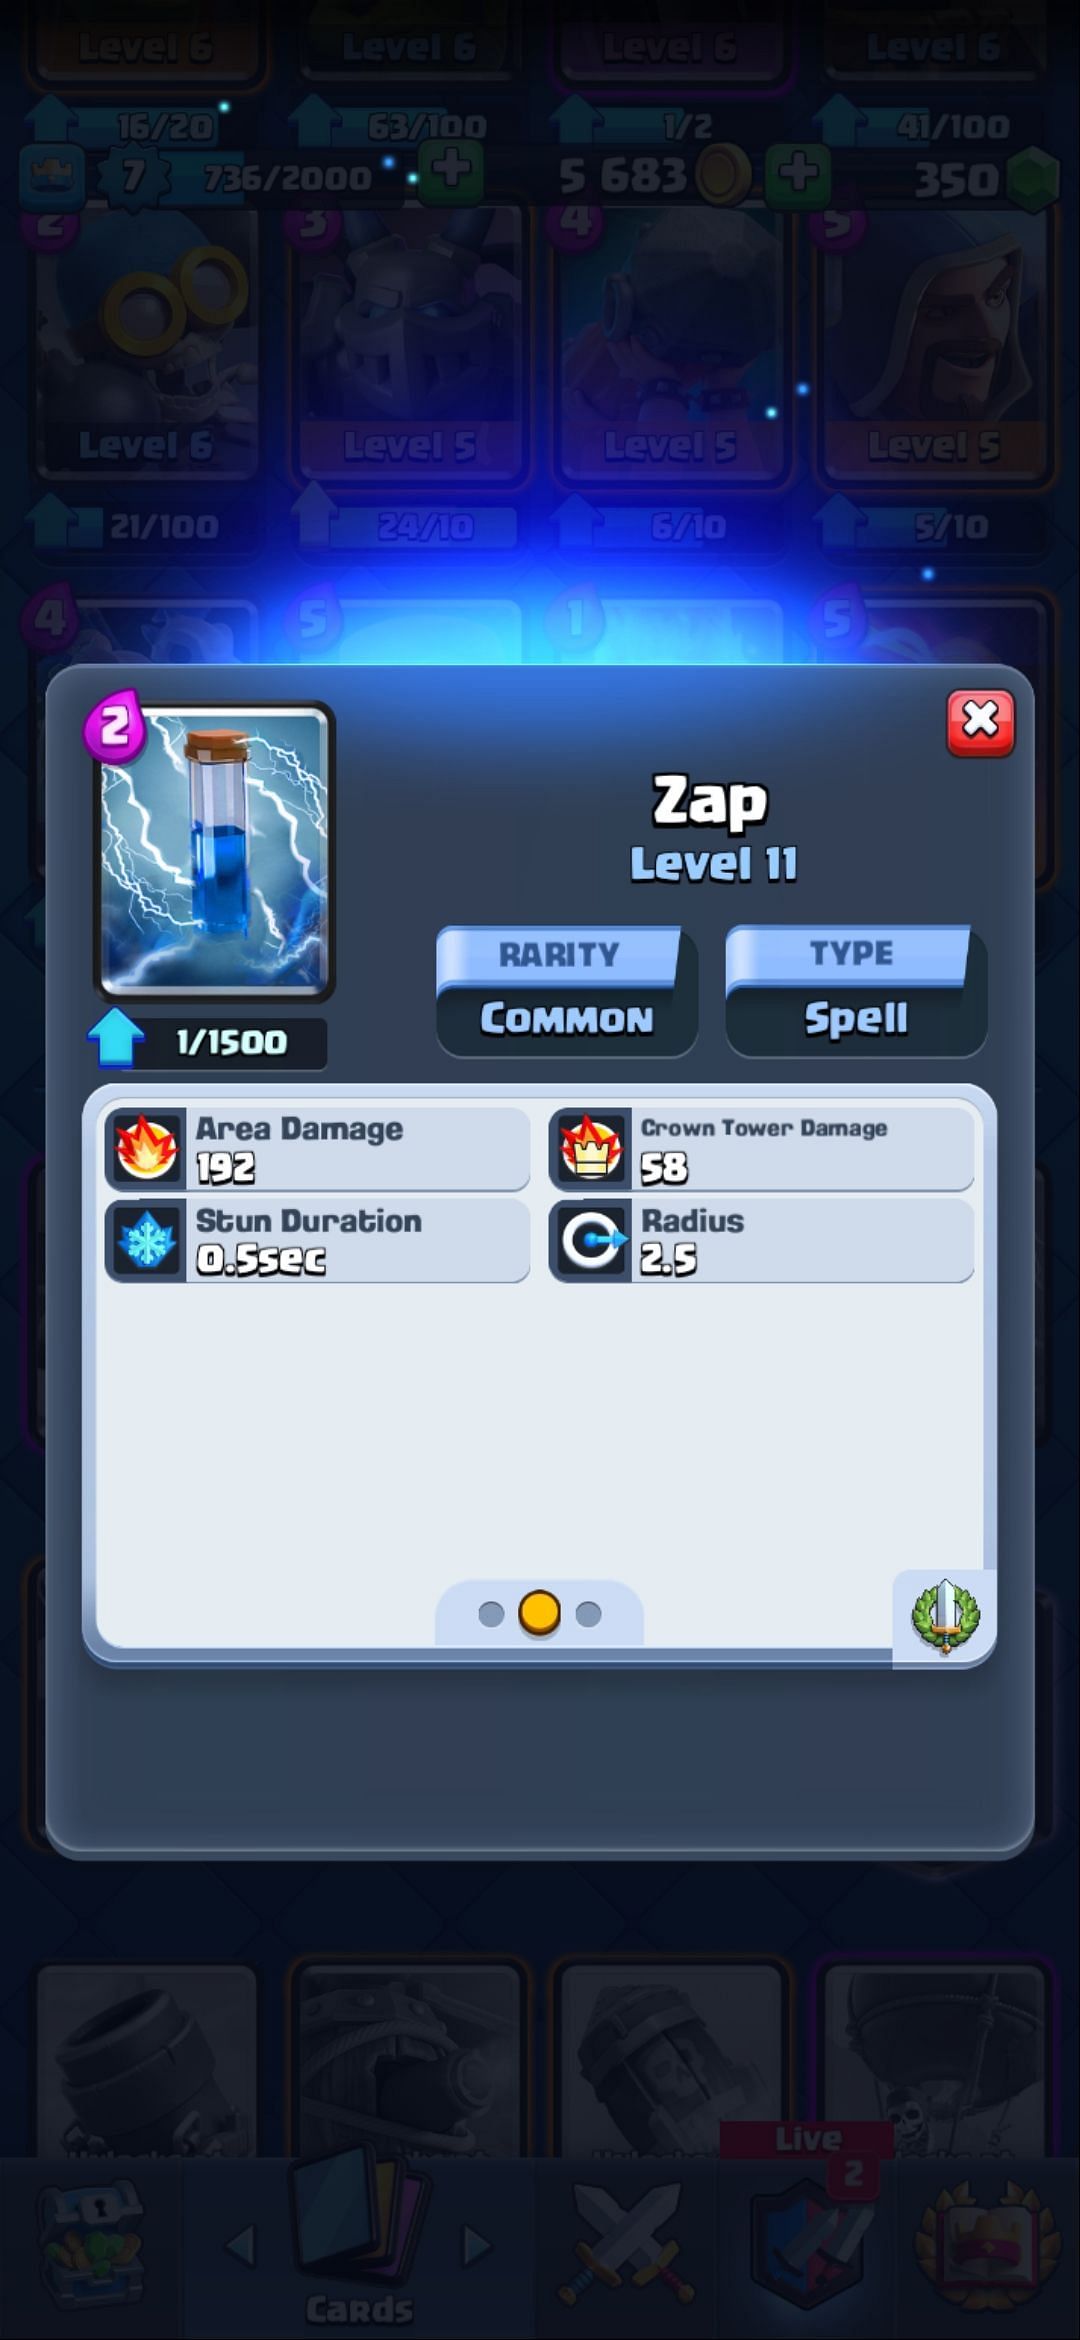 The Zap spell (Image via Sportskeeda)